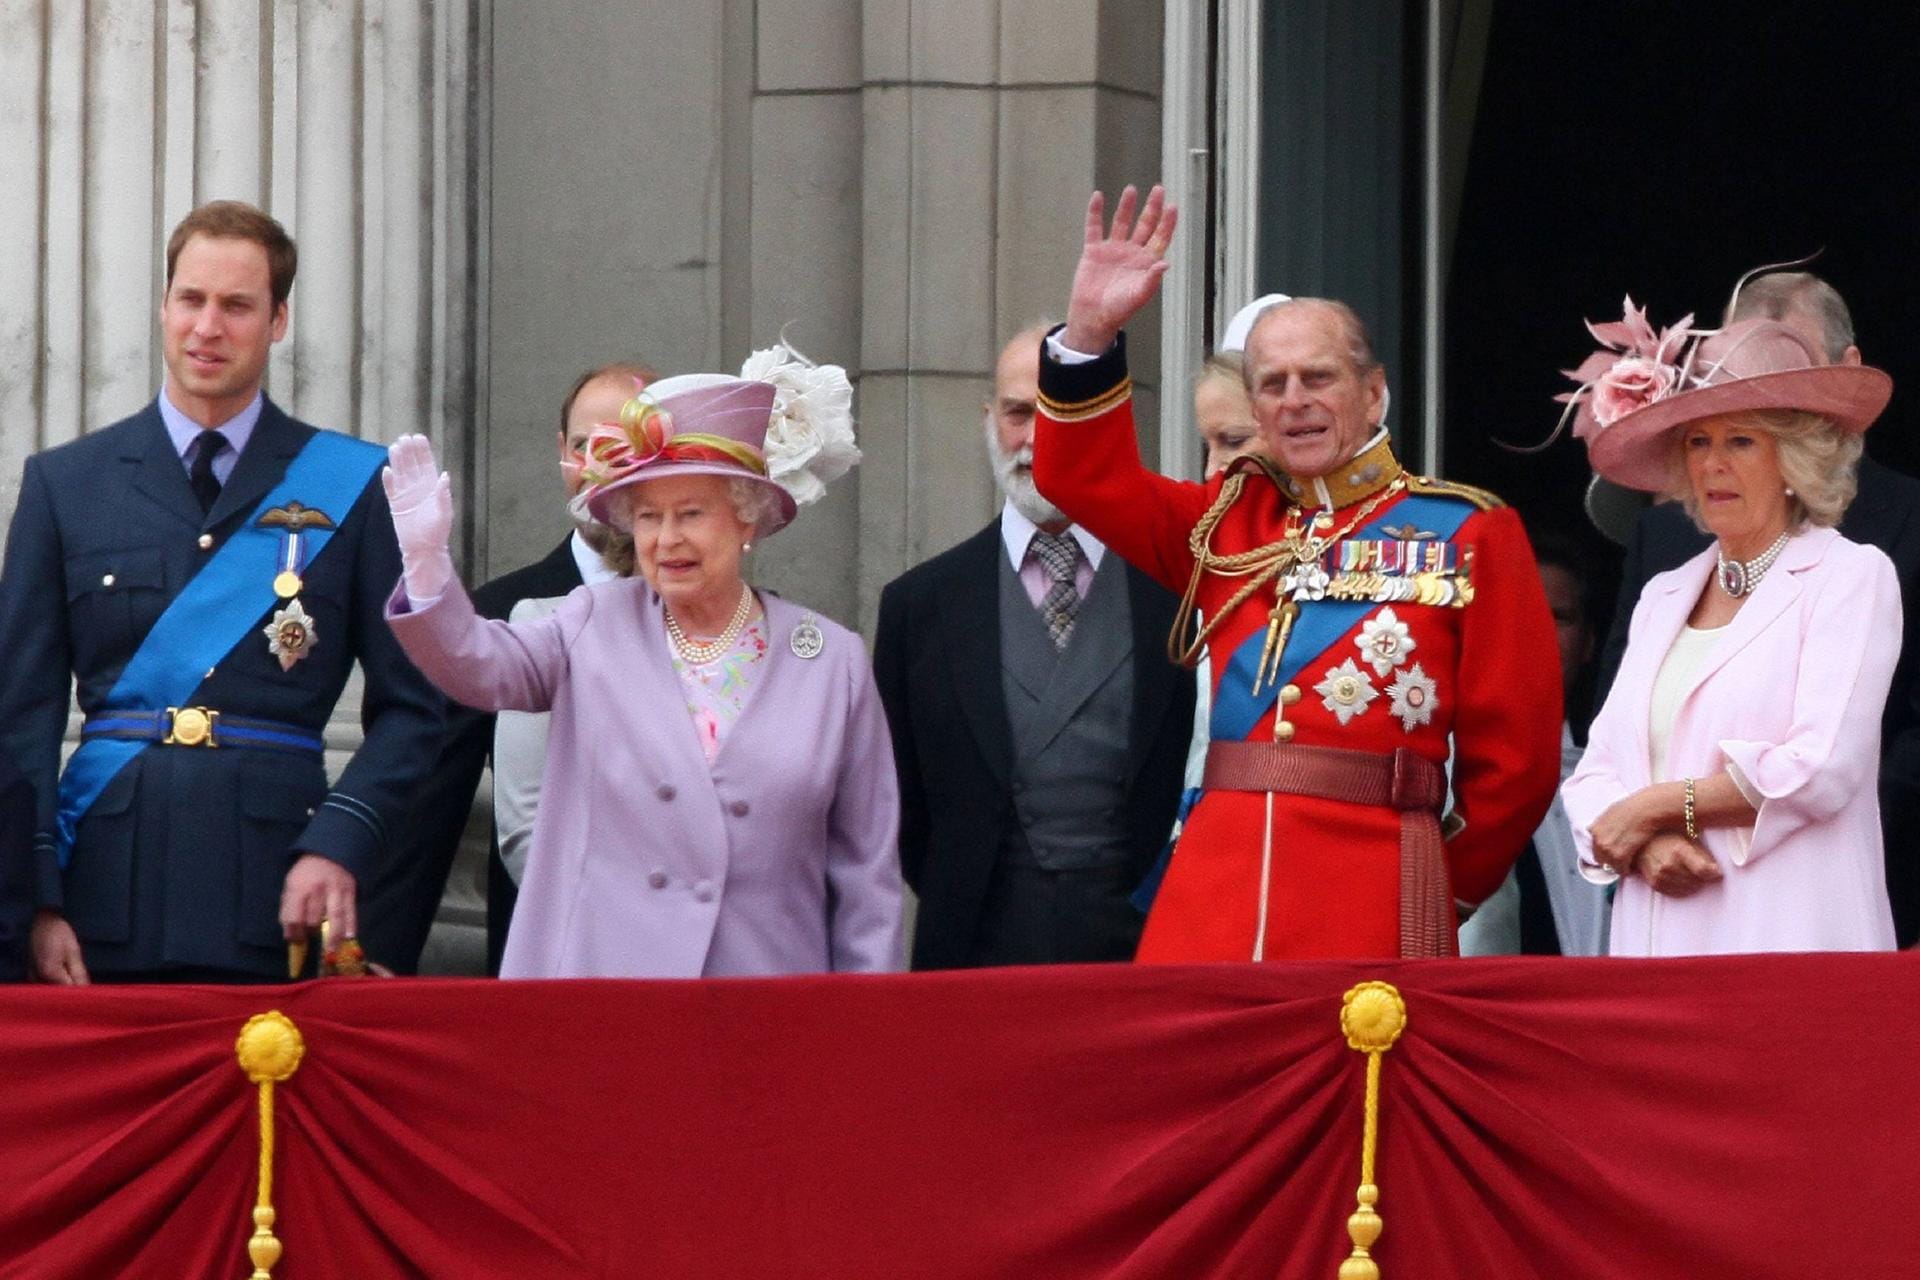 2010: Die Queen winkt zusammen mit ihrem Mann Prinz Philip ins Publikum. Neben ihnen stehen ihr Enkel Prinz William sowie Camilla, die Ehefrau ihres Sohnes Prinz Charles.